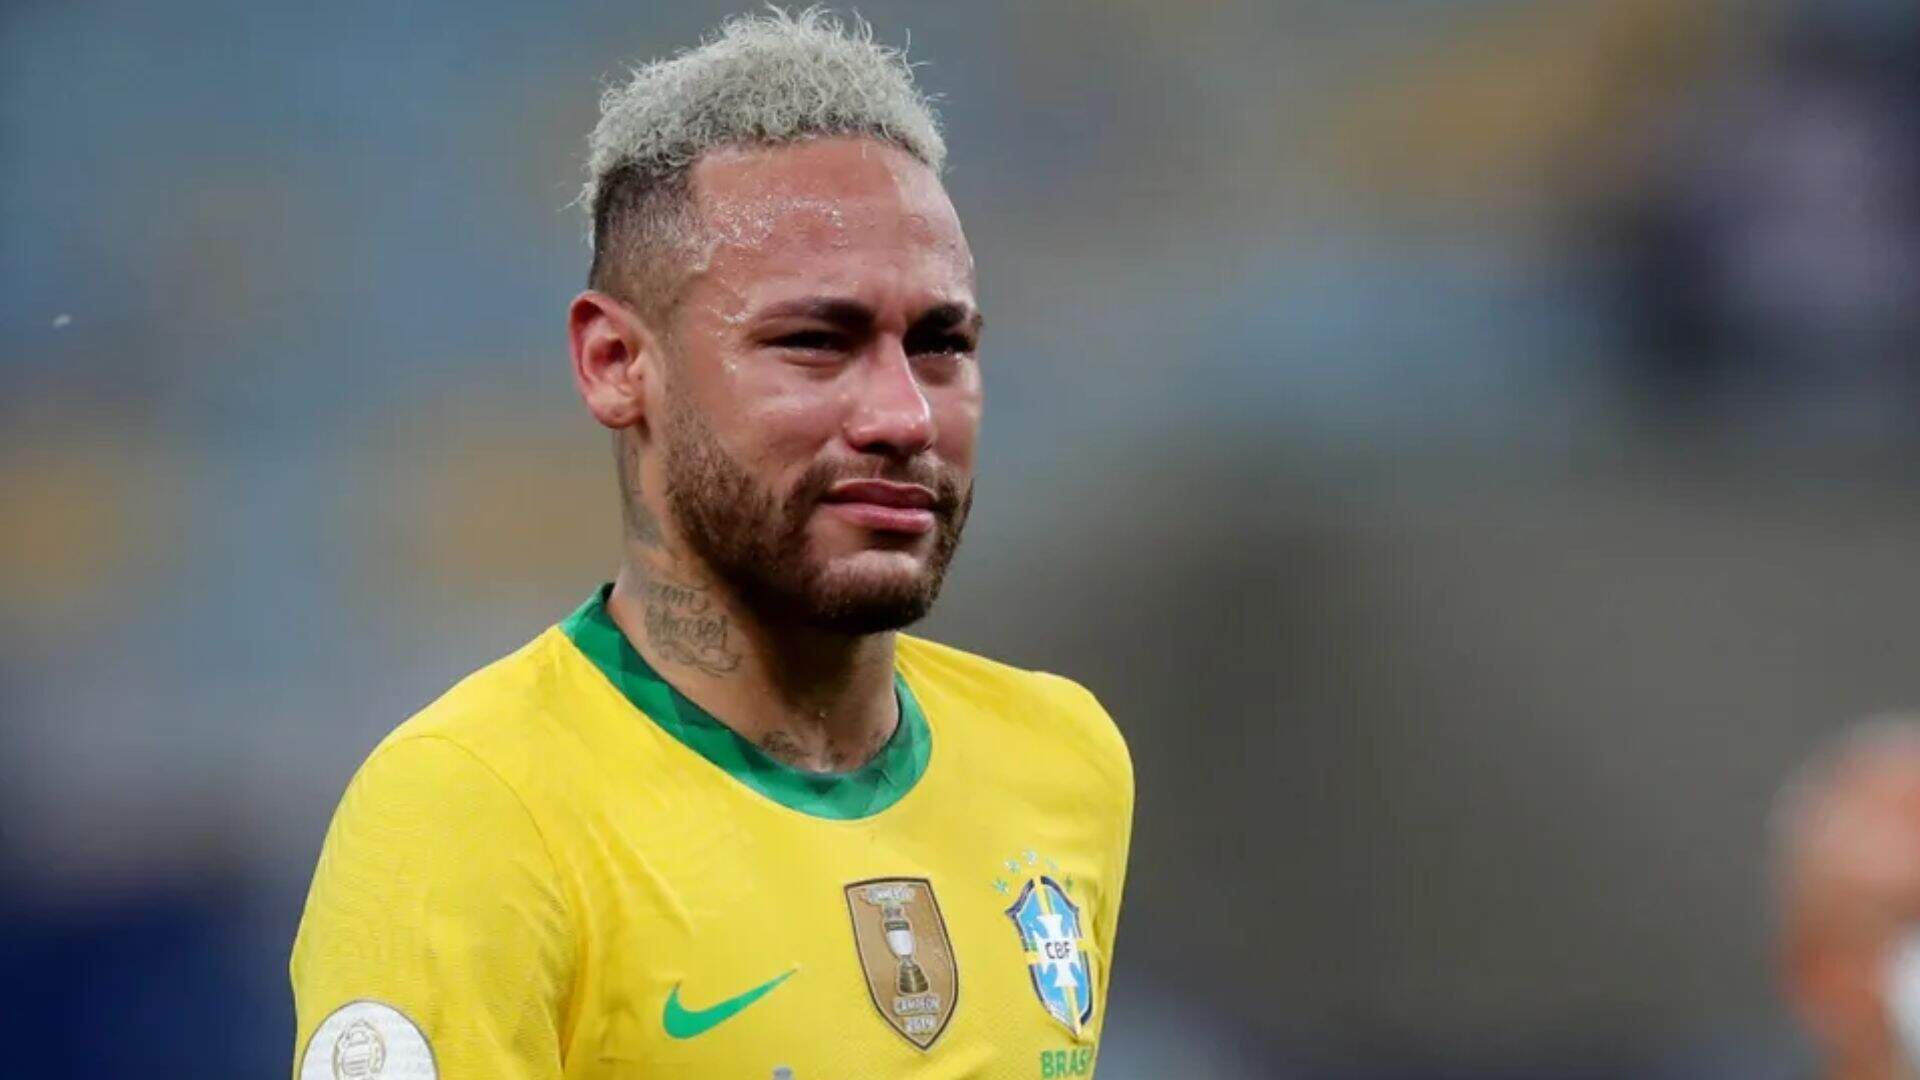 Neymar choca a web ao compartilhar print de conversa no Whatsapp: “Postou sem querer?” - Metropolitana FM